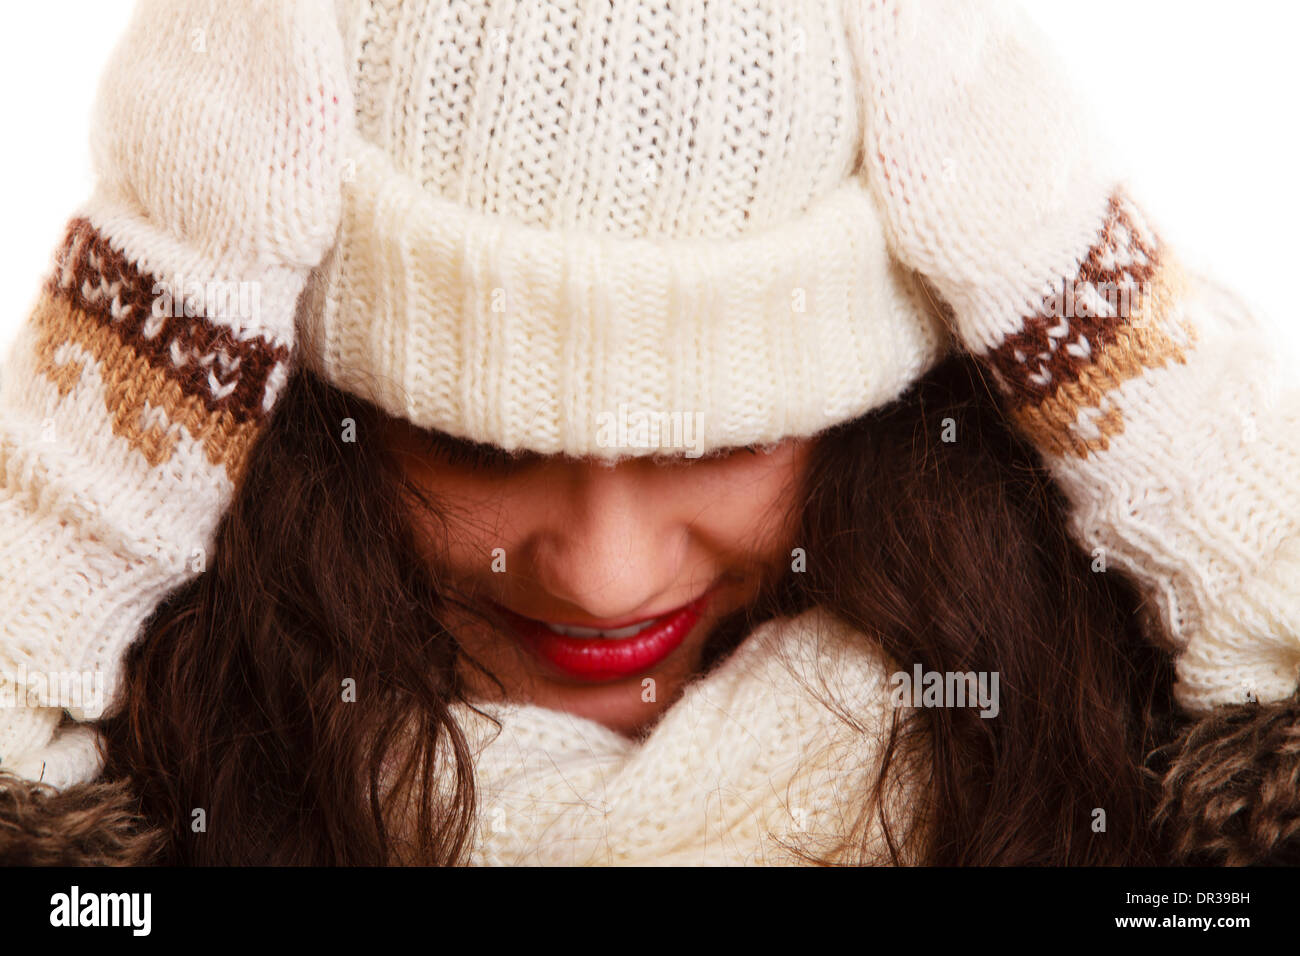 Winter-Mode. Porträt des lockigen Mädchen junge Frau in warme Kleidung weiße Mütze und Schal isoliert. Studio gedreht. Stockfoto